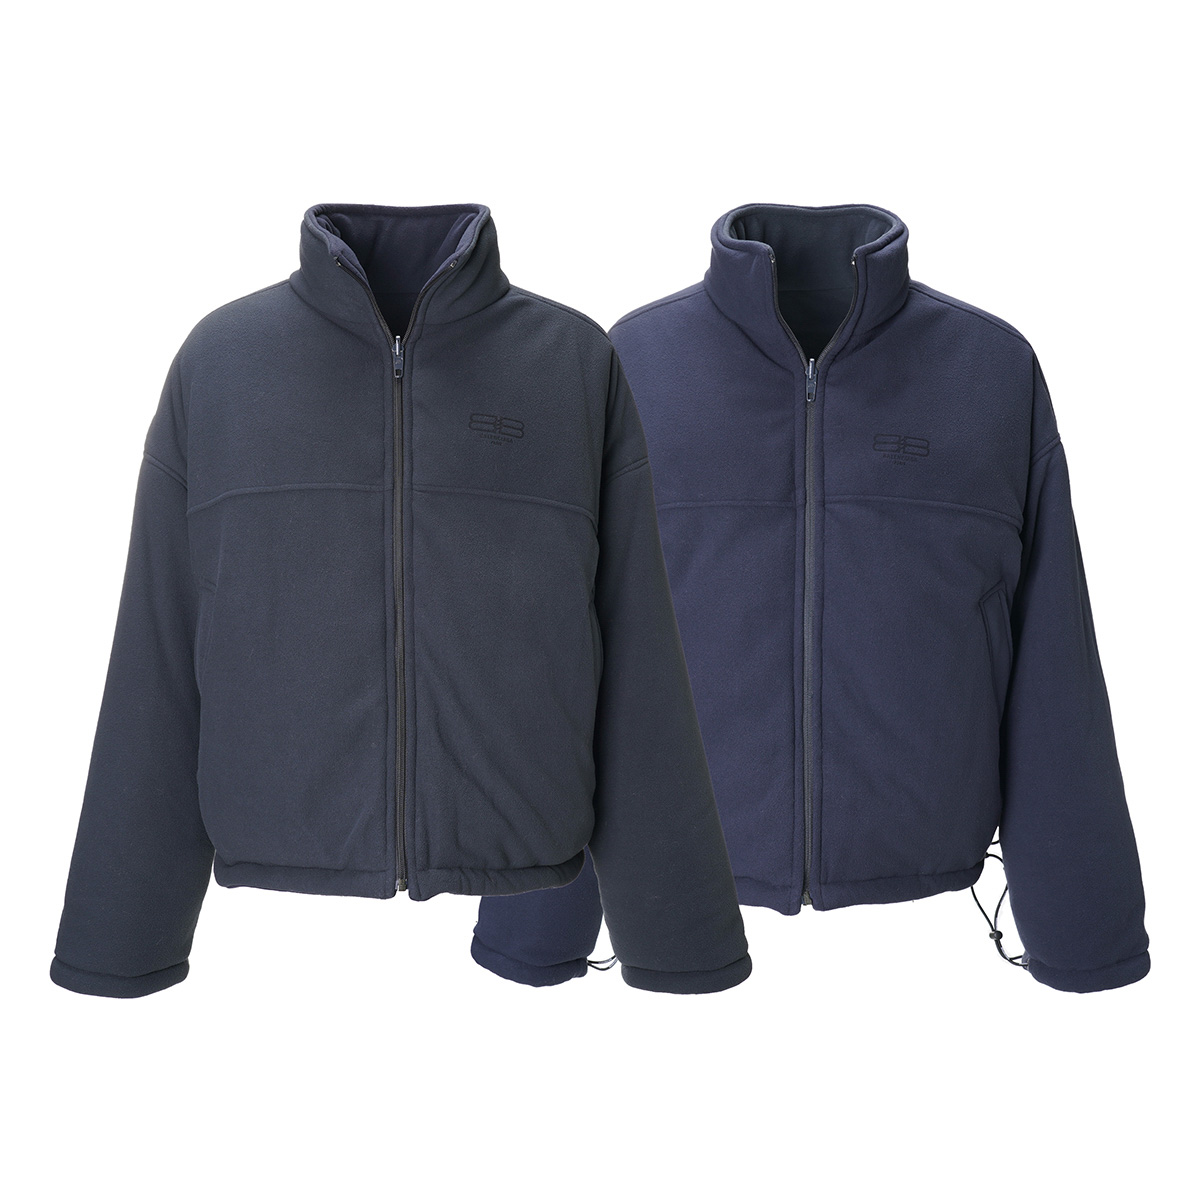  Balenciaga BALENCIAGA with cotton jacket REVERSIBLE PUFFER gray men's 704507-tmq04-1055